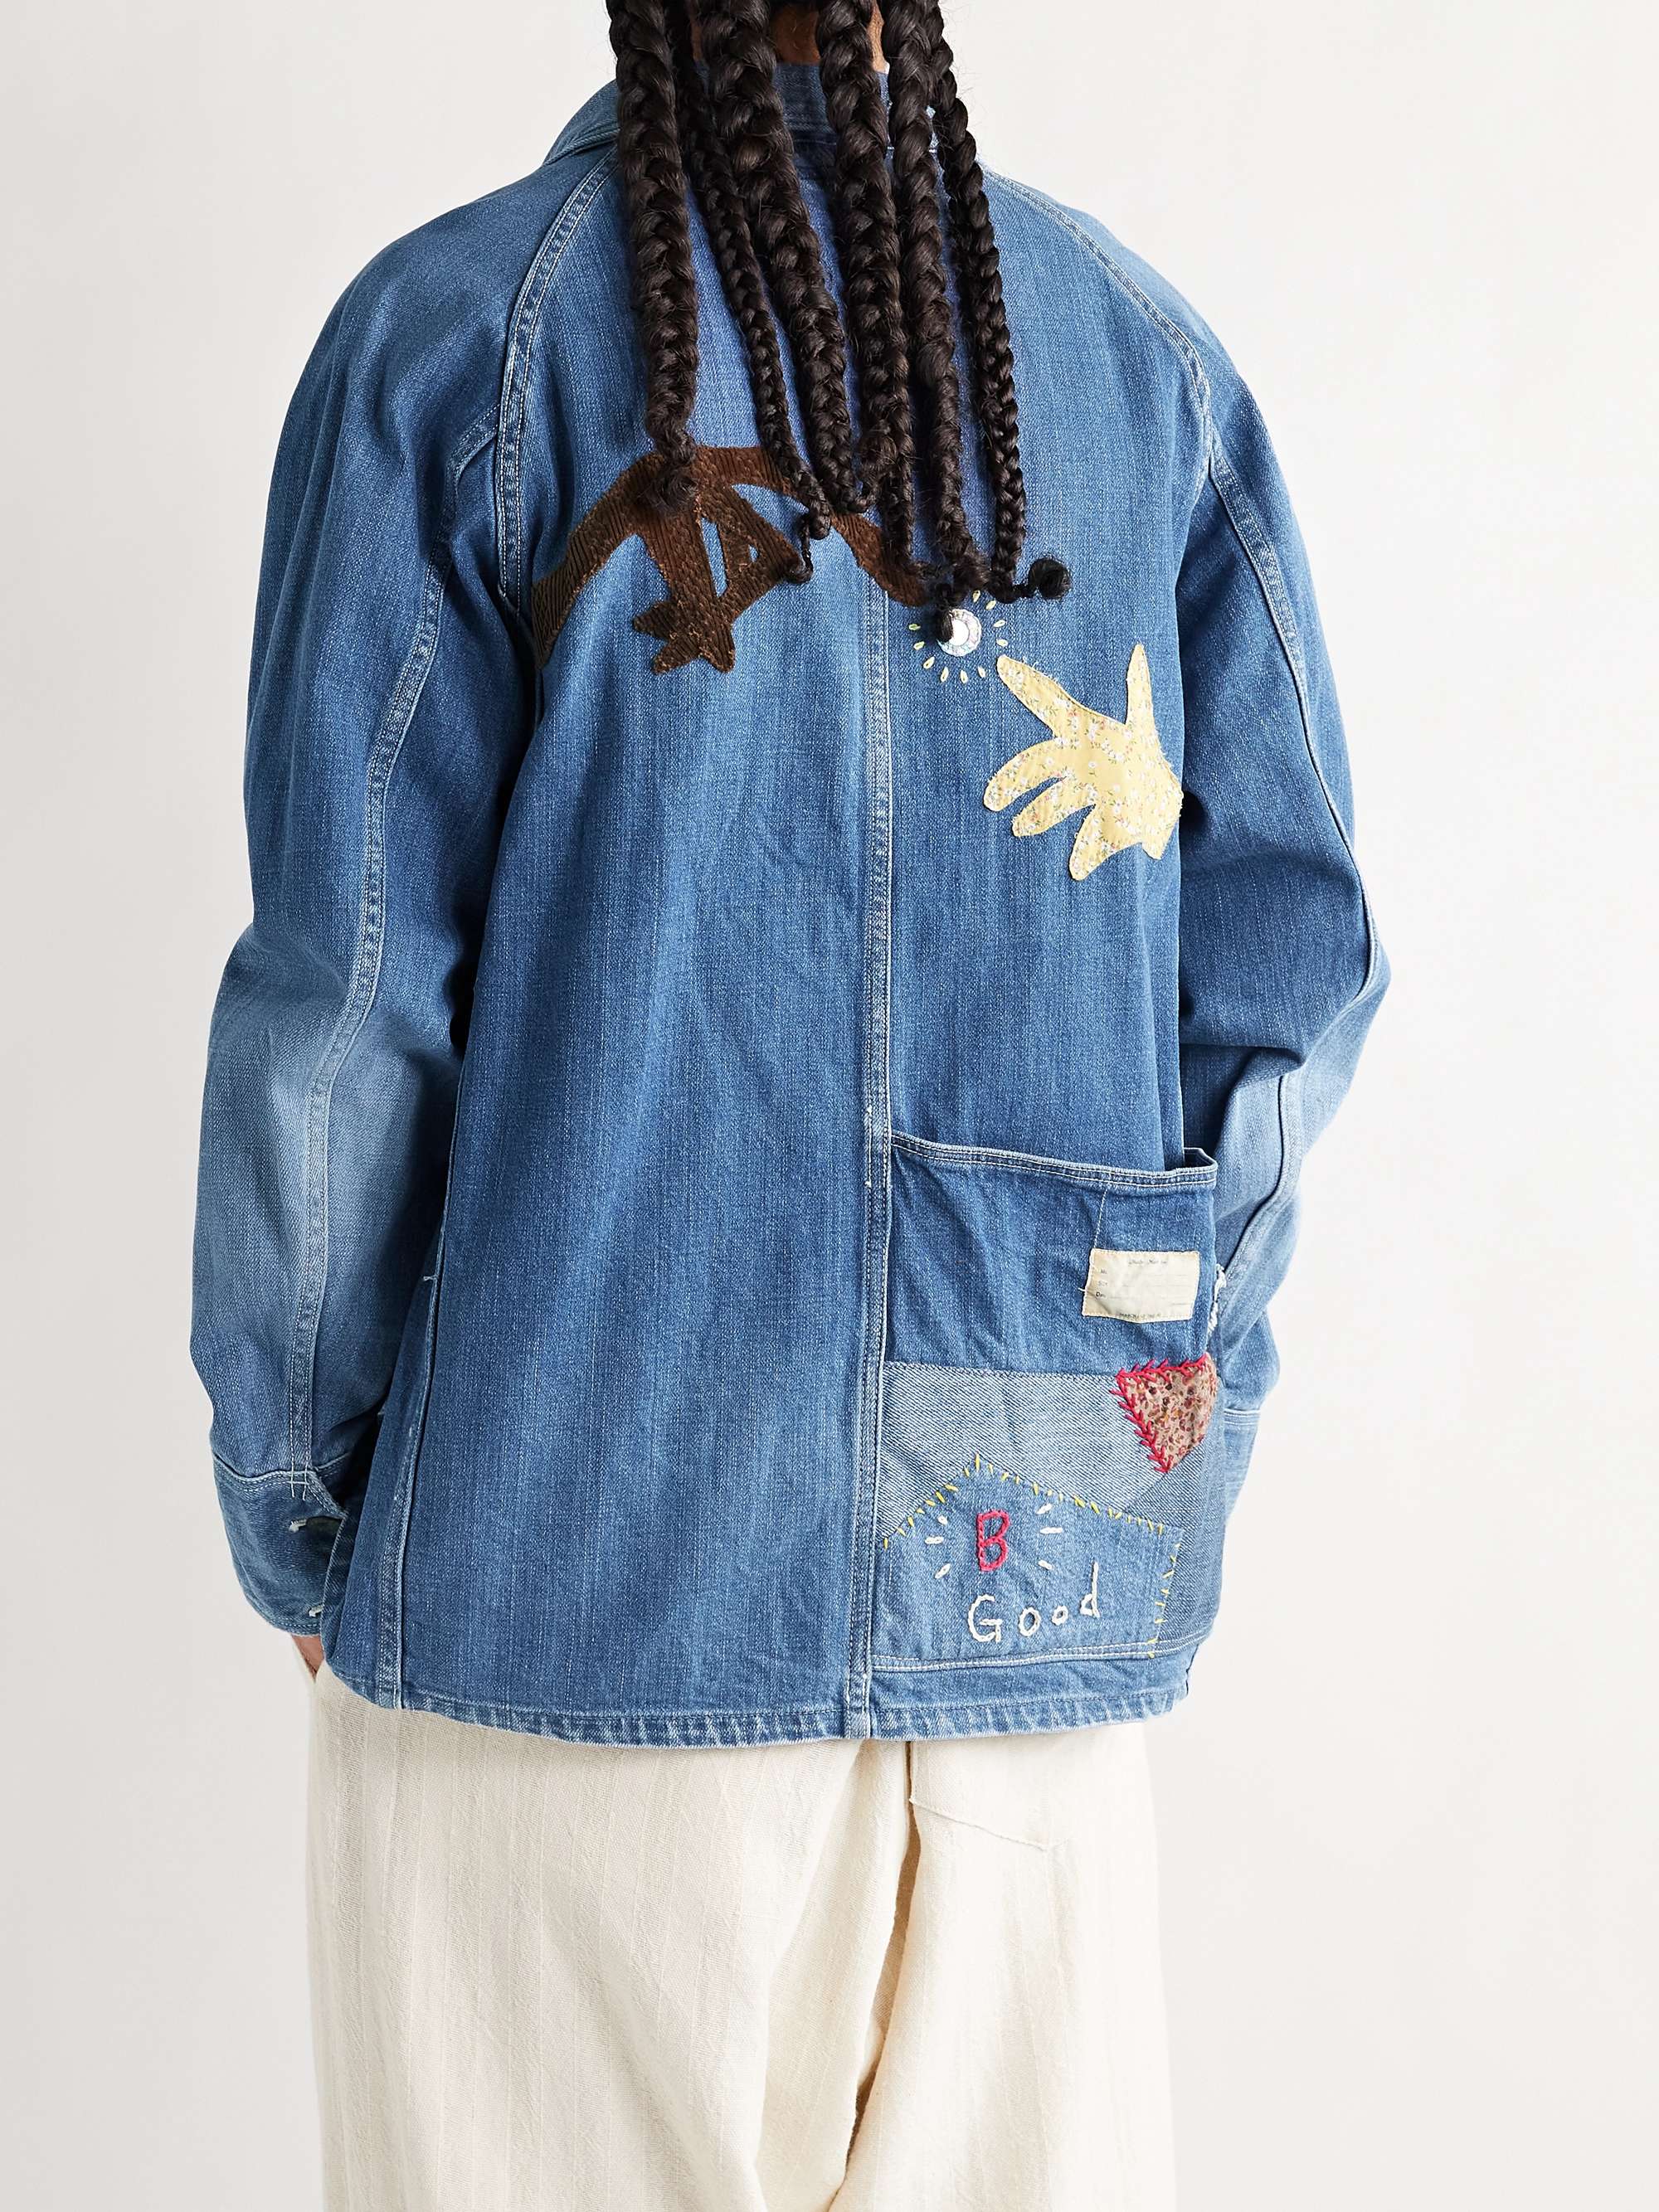 KAPITAL Appliquéd Embellished Denim Jacket